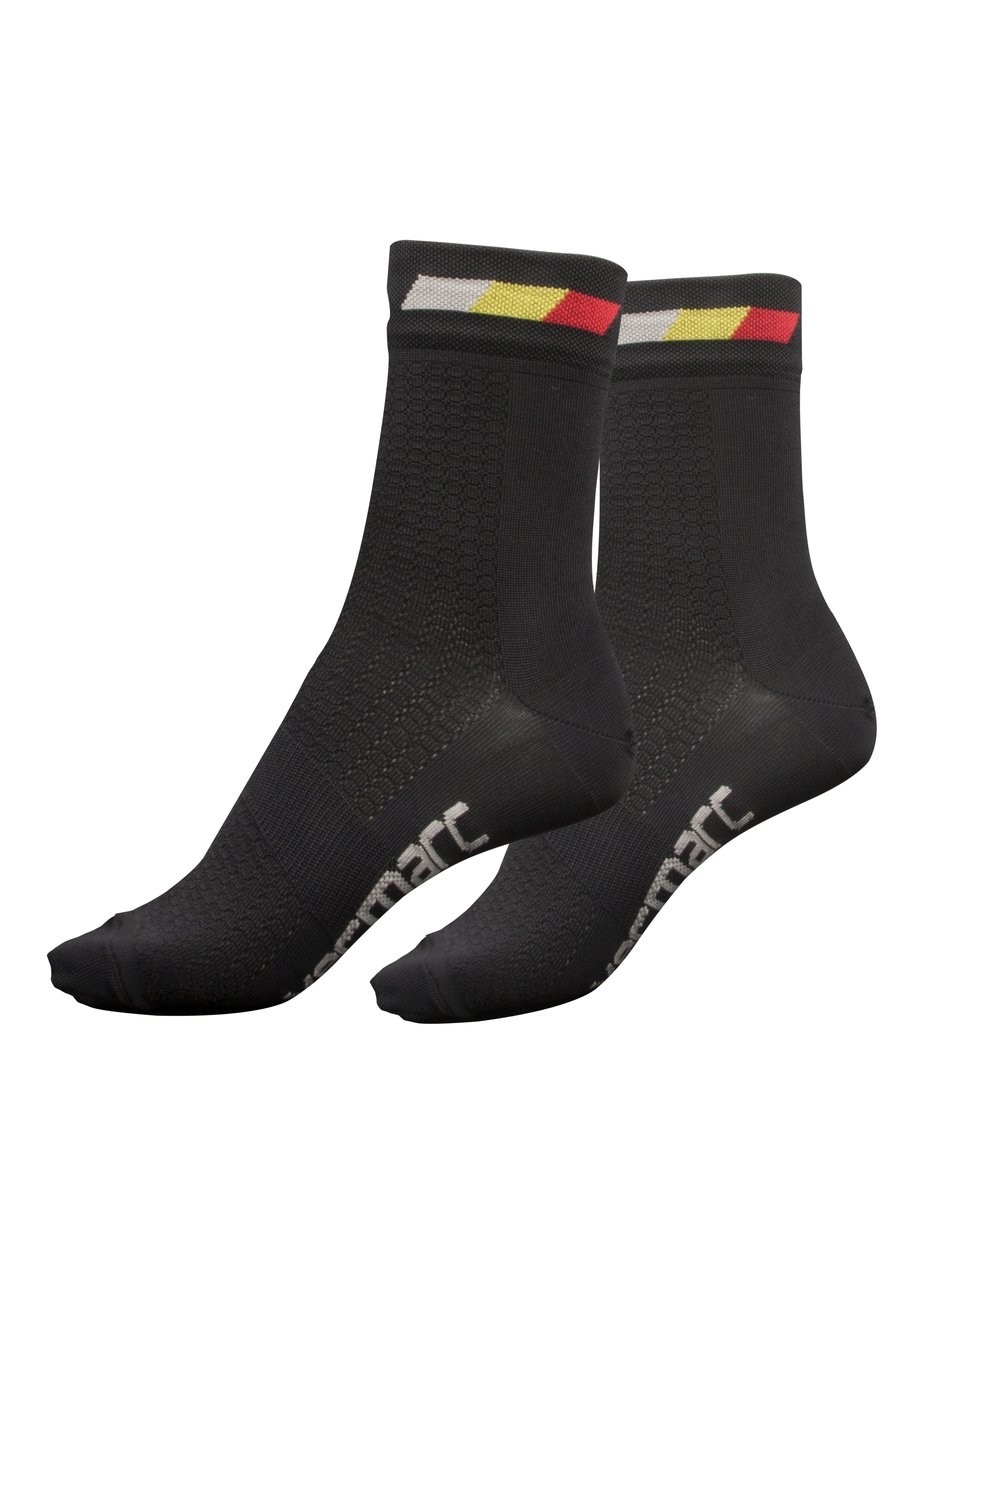 Vermarc belgica chaussettes de cyclisme noir